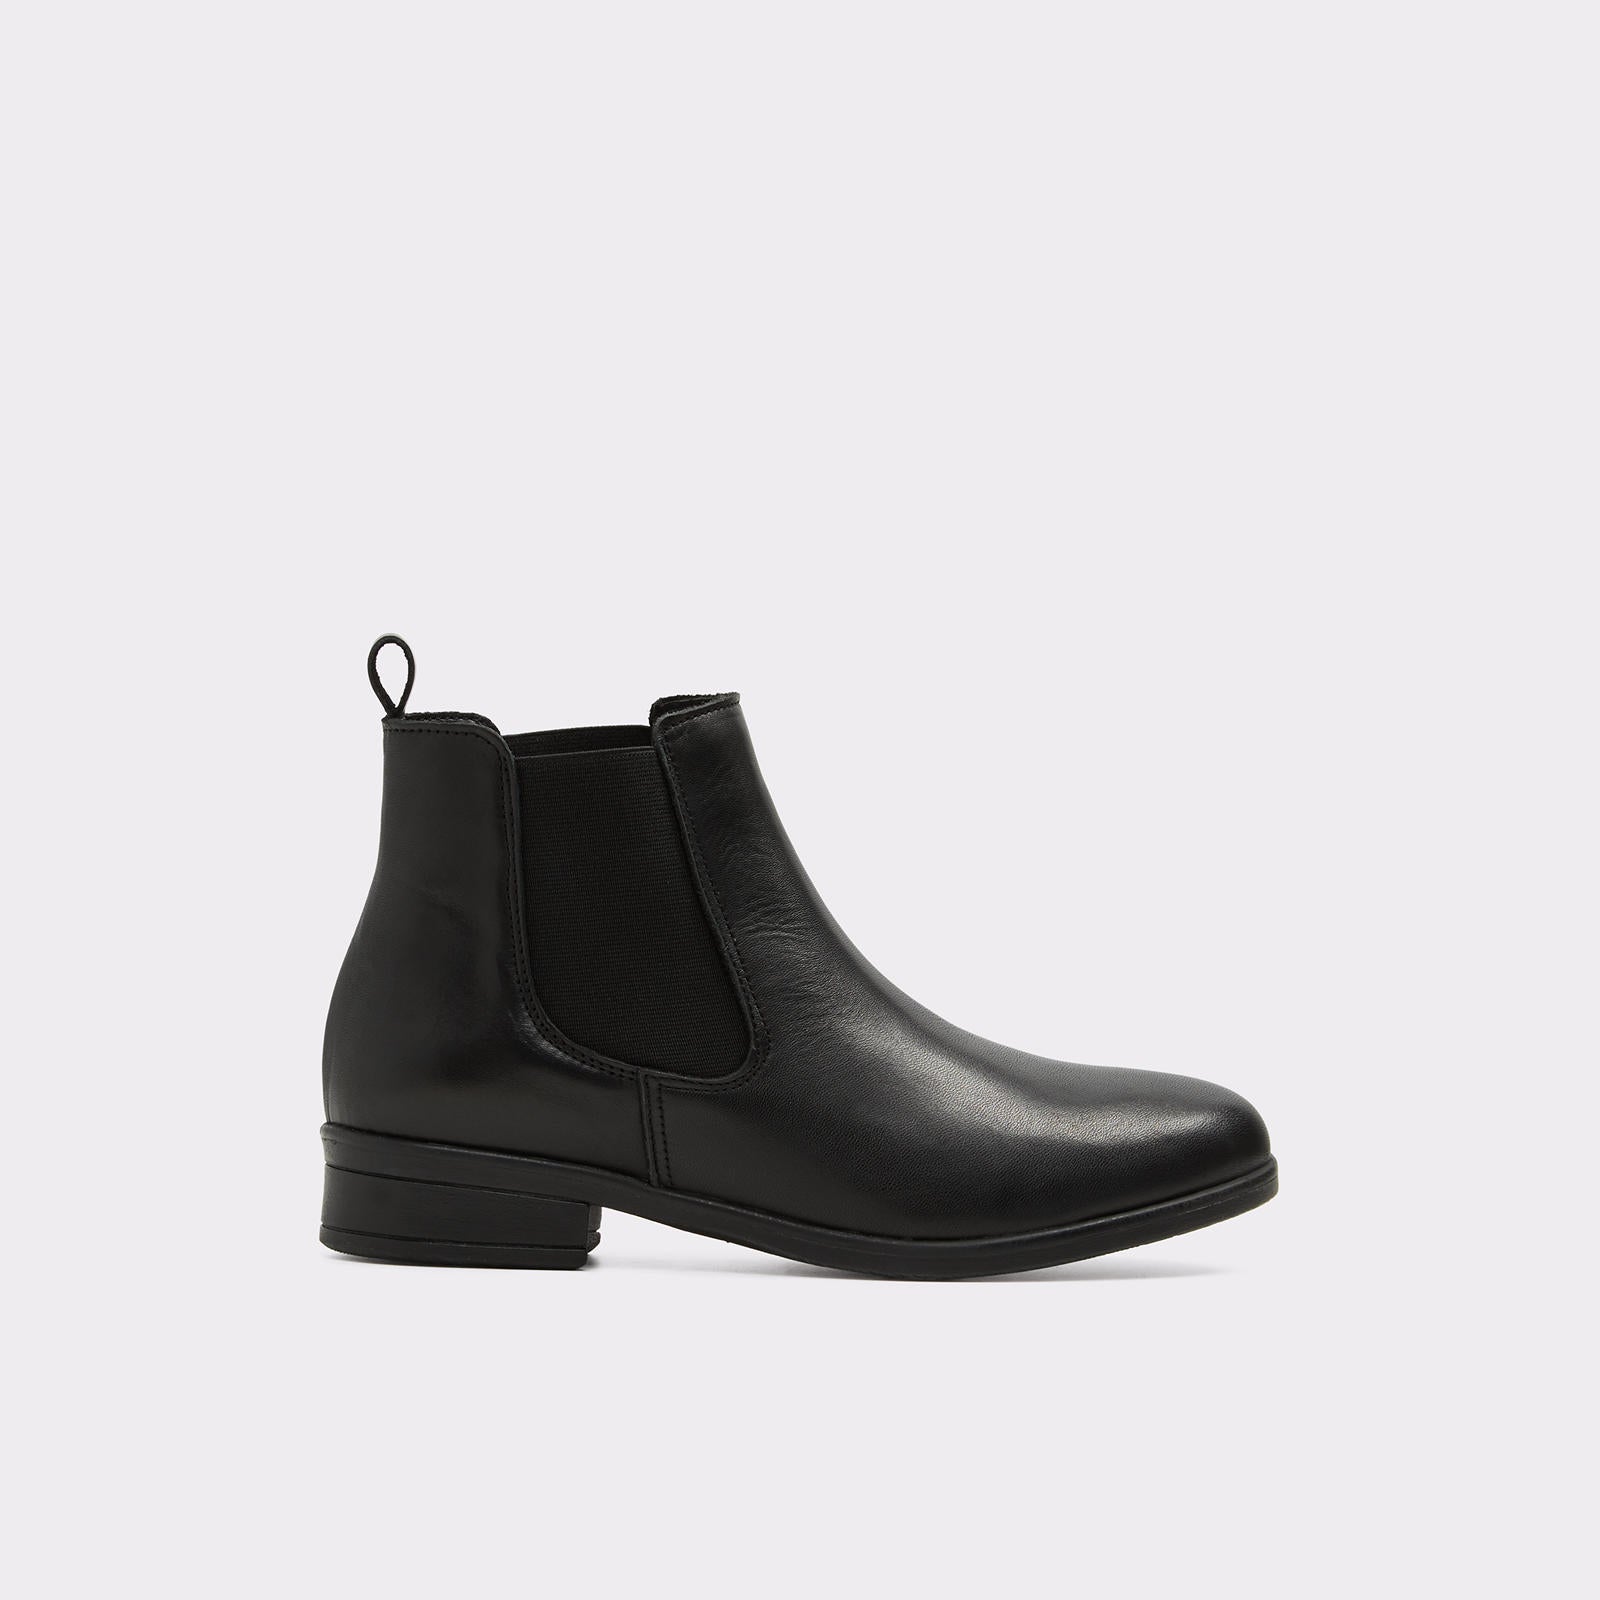 tørre Recollection Lære udenad Aldo Women's Ankle Boots Wicoeni (Black) – ALDO Shoes UK